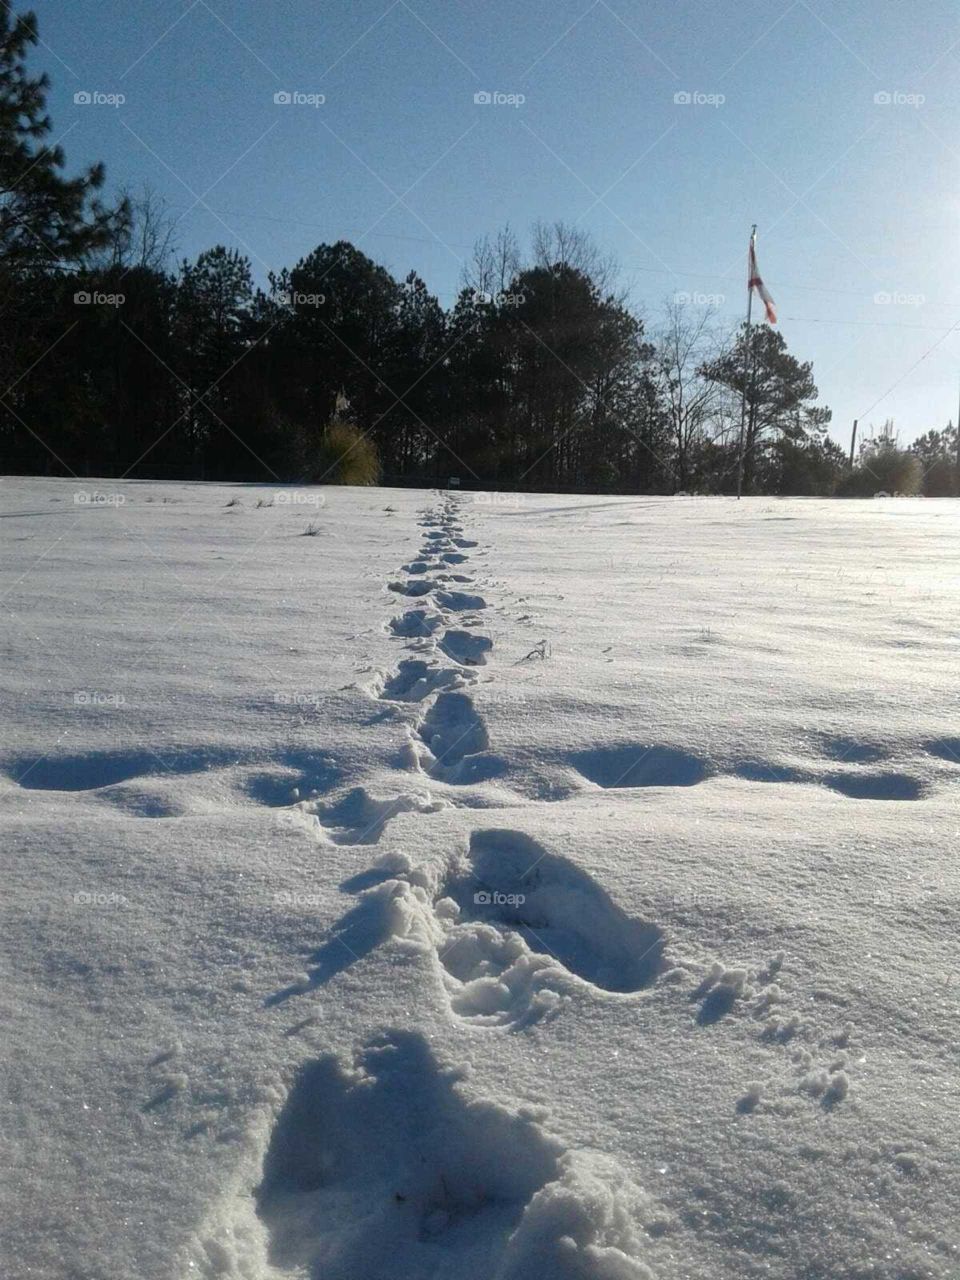 Footprints in a white wonderland